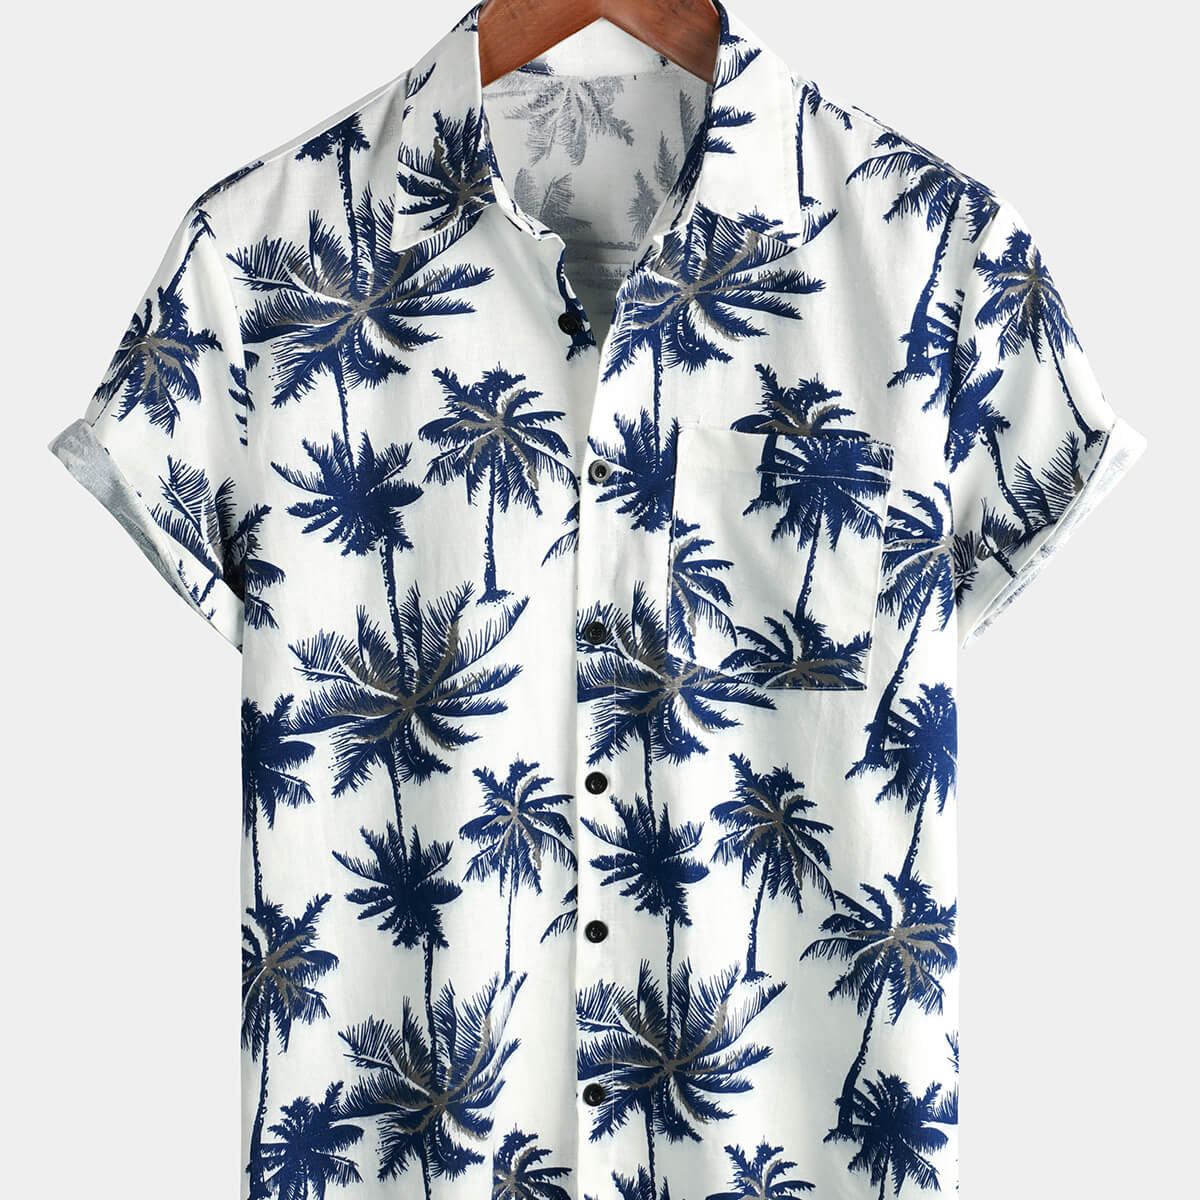 Camisa de manga corta de verano para vacaciones en la playa con estampado de palmeras hawaianas blancas de lino y algodón para hombre